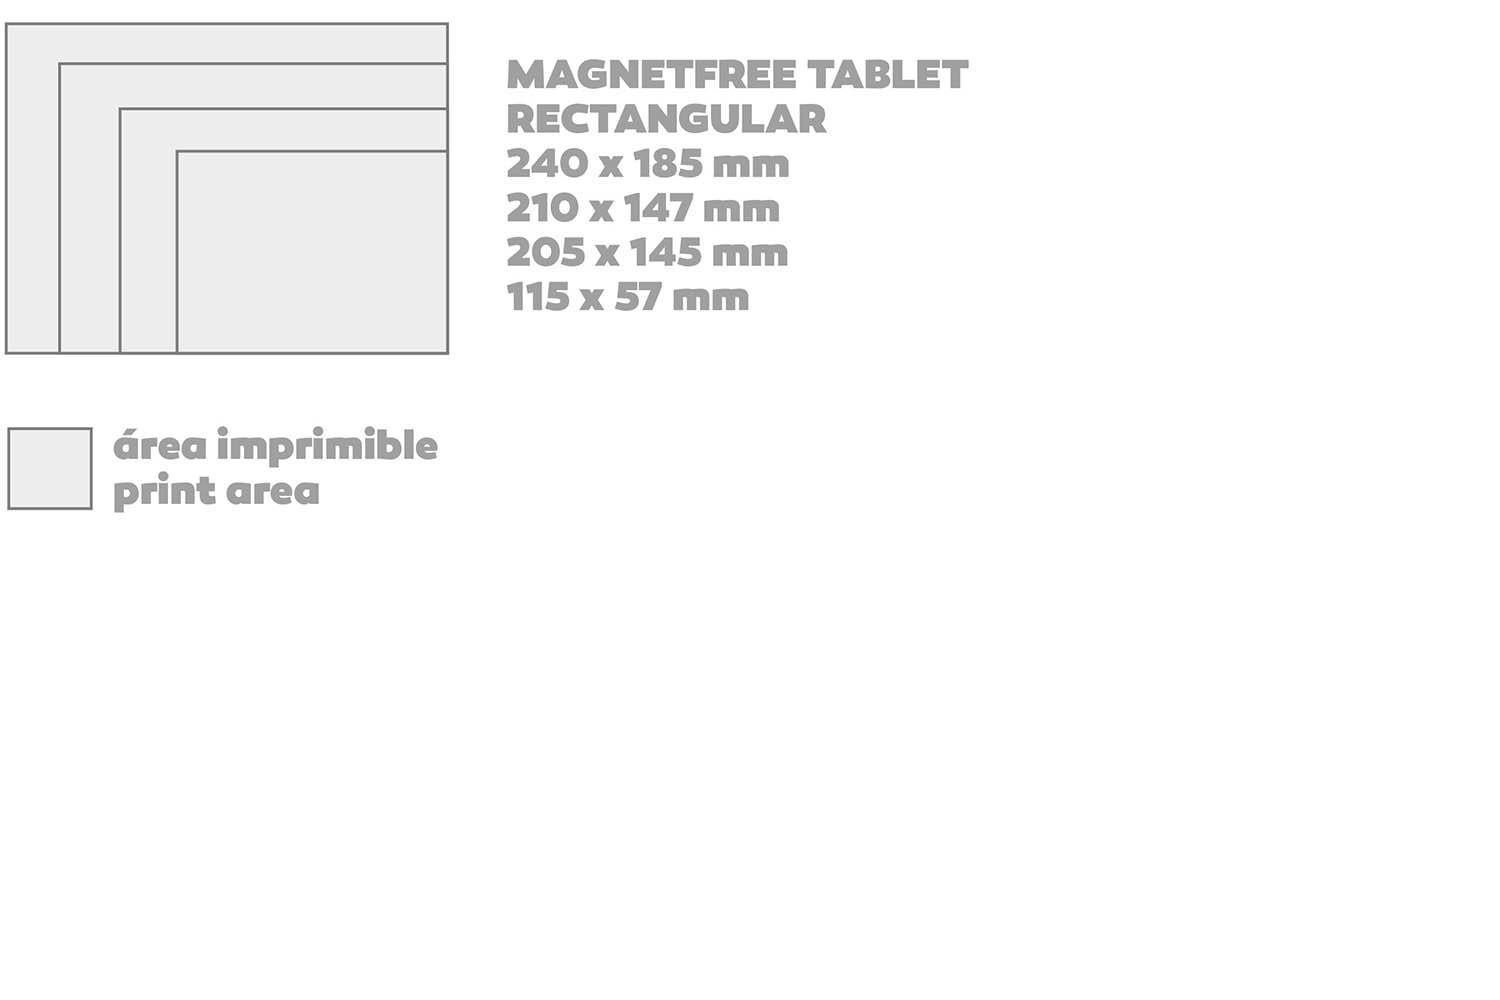 Magnetfree Tablet P037 FORMATOS.jpg